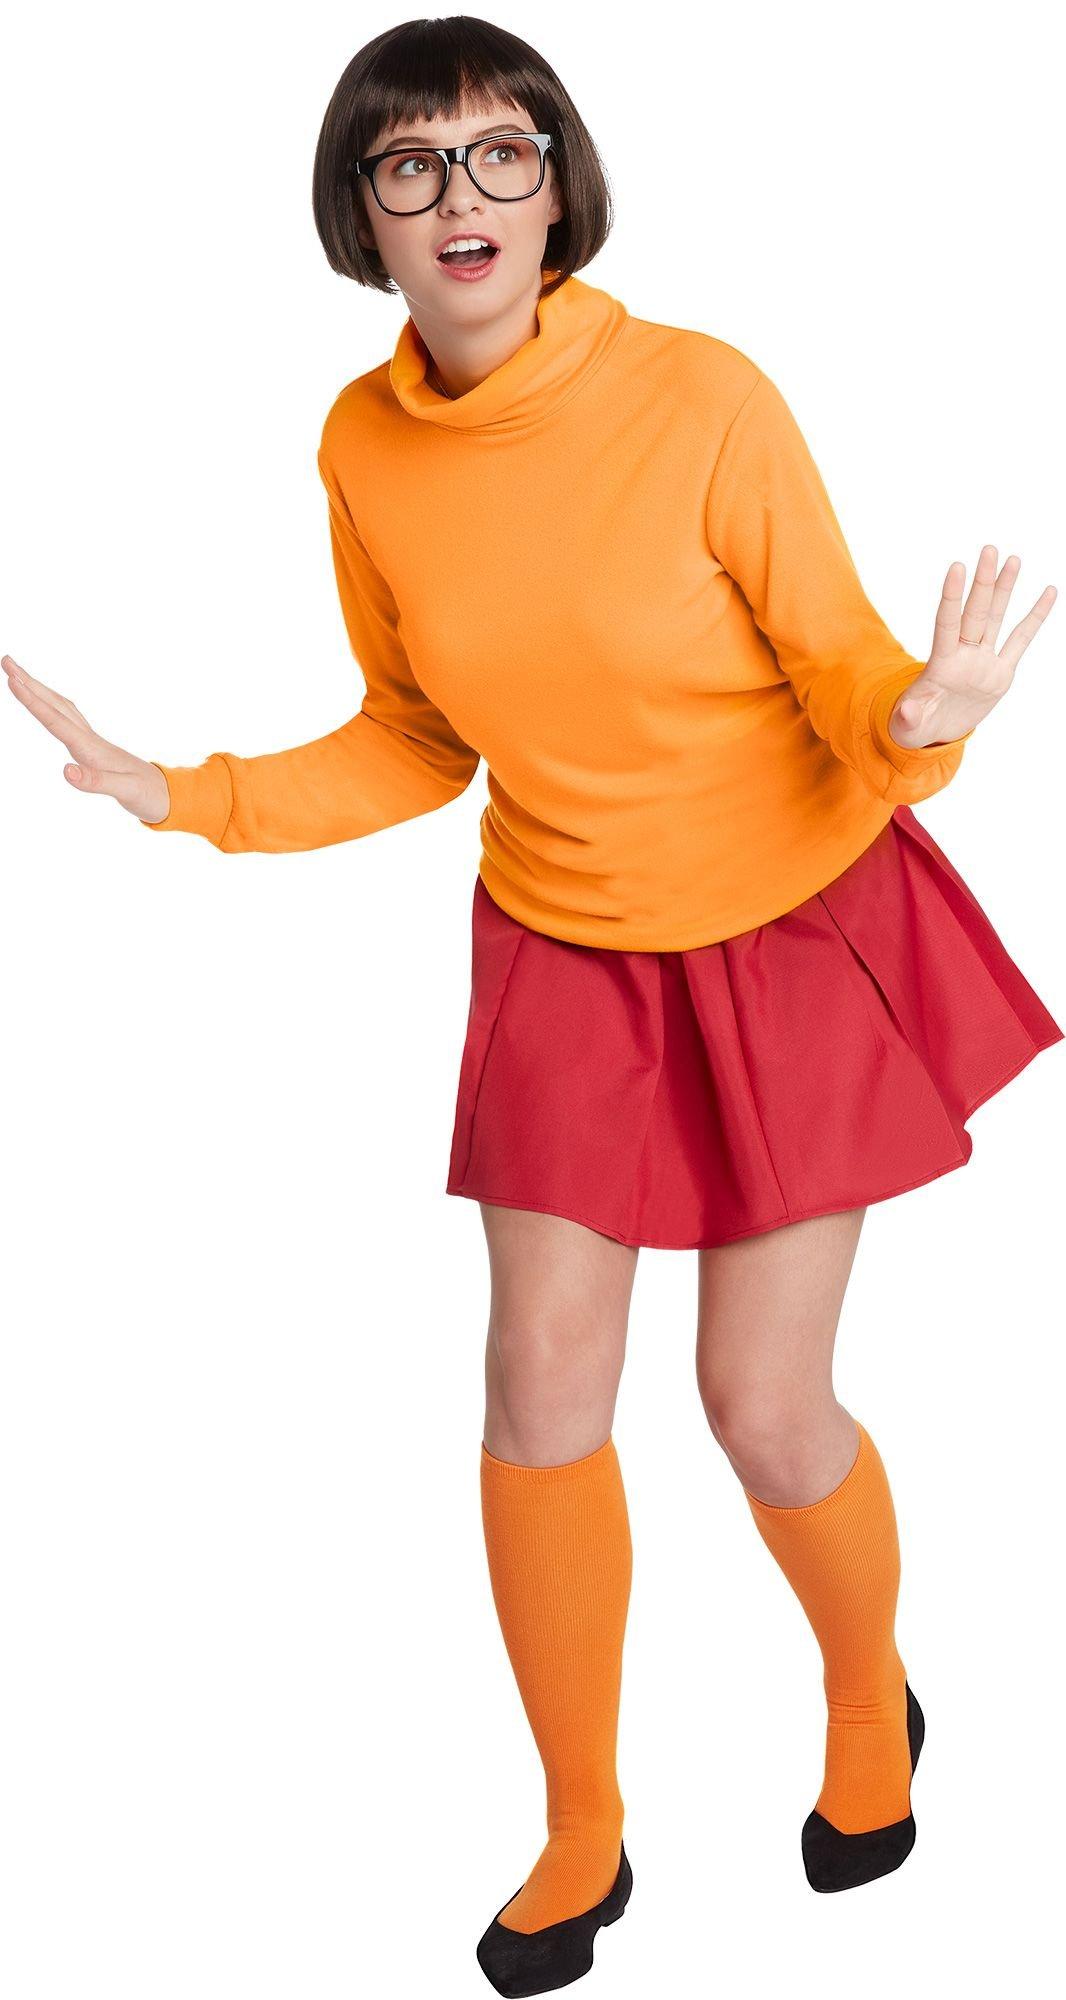 Velma Costume Party City 